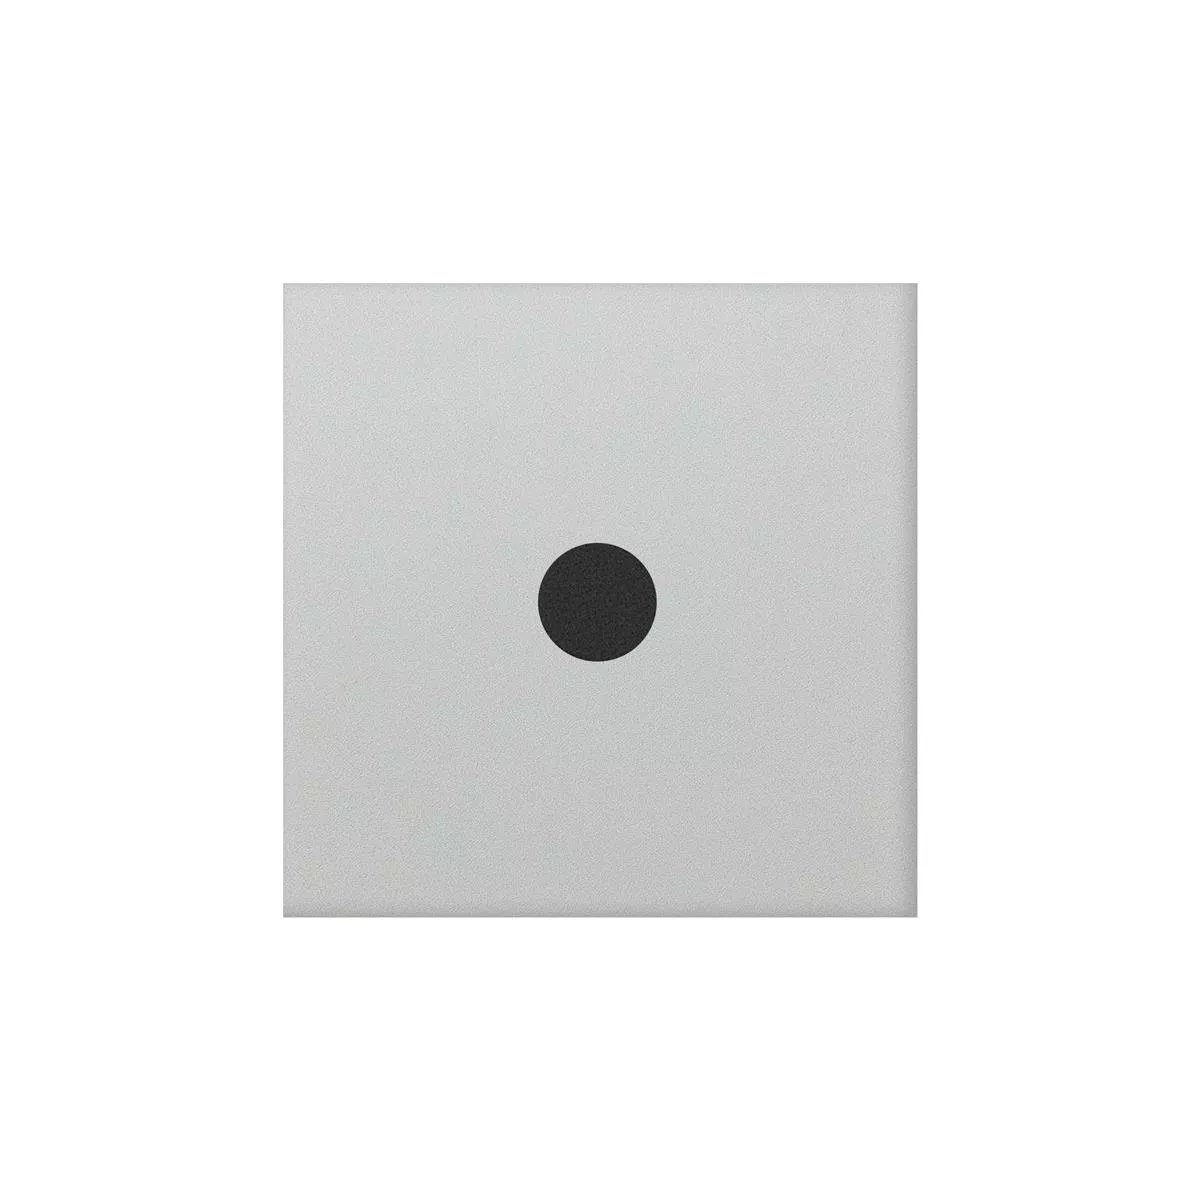 Порцеланови Kаменинови Изделия Плочки Genexia Черно Бяло Decor 3 Розоне  4,6x4,6cm